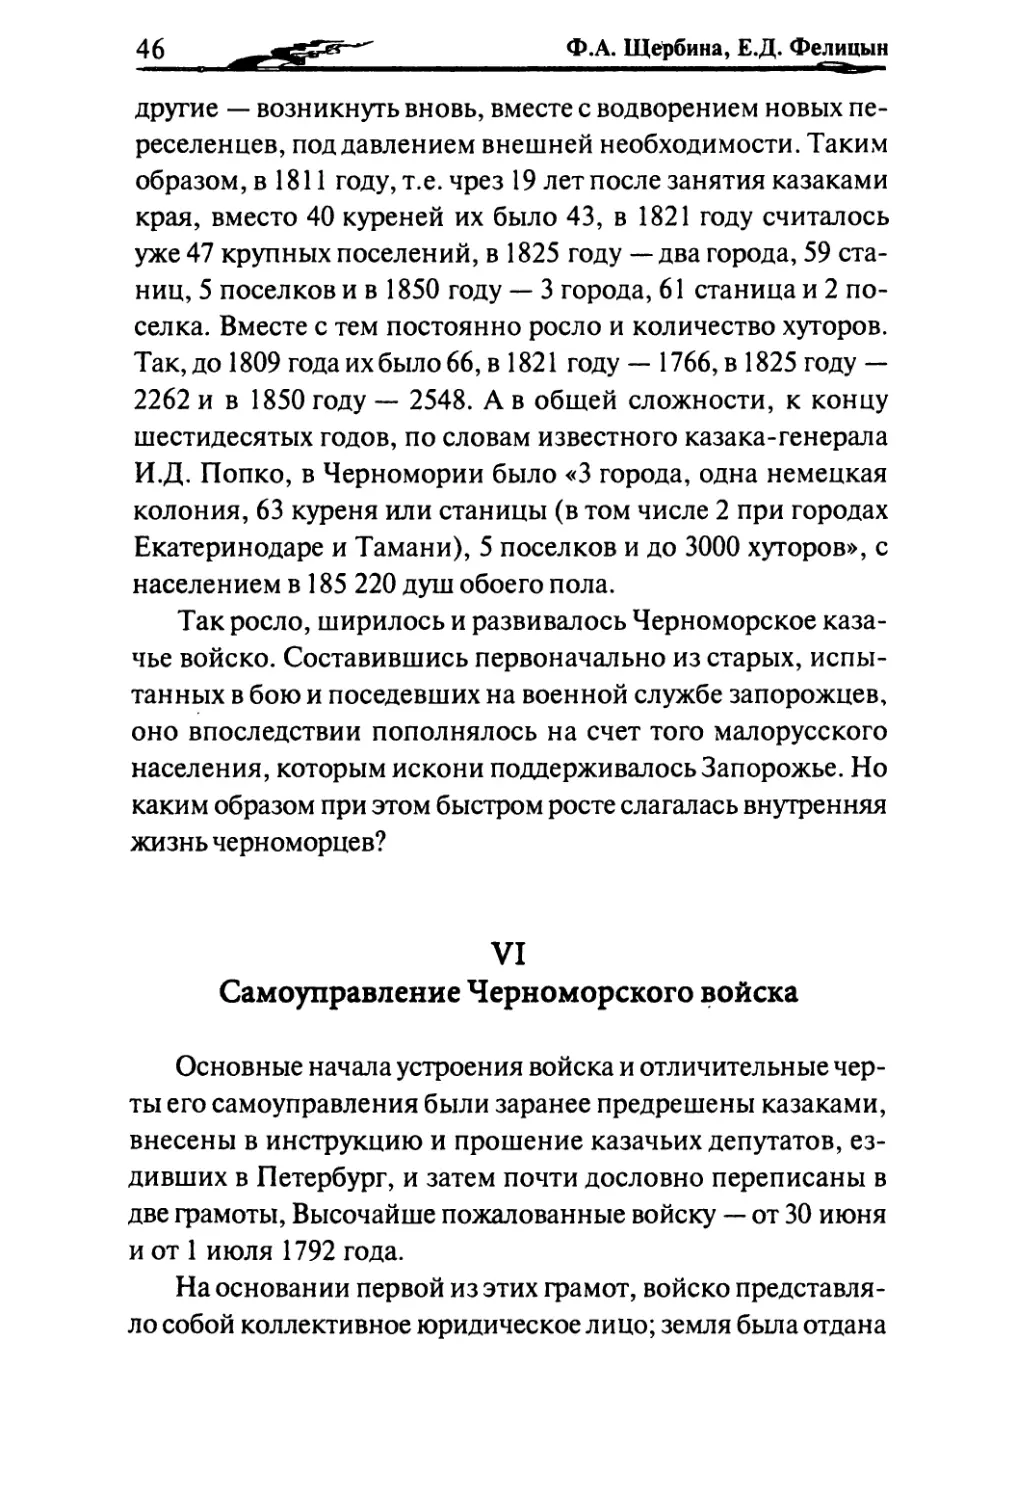 VI. Самоуправление Черноморского войска